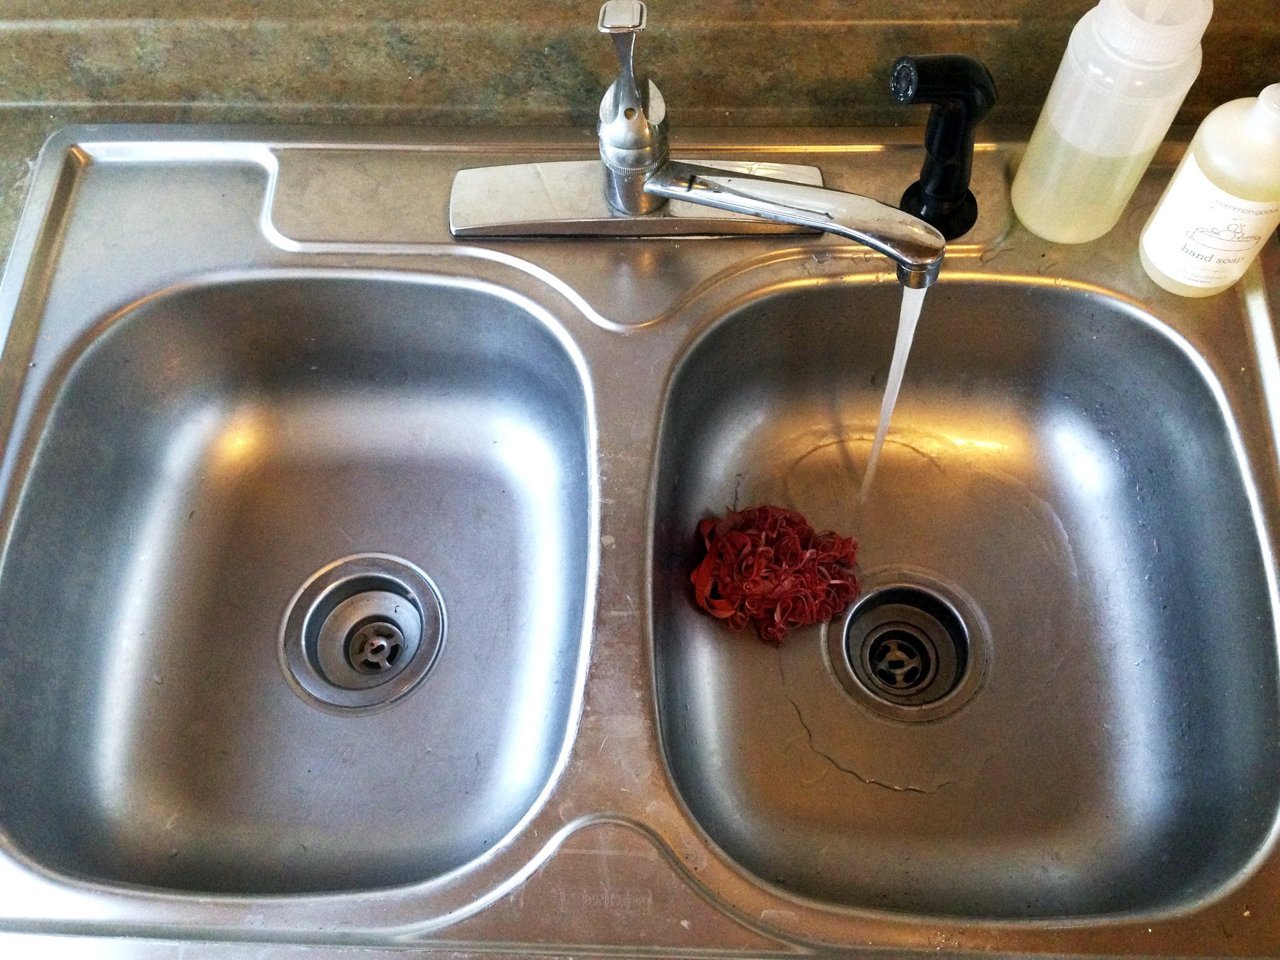 Раковина засорилась что делать: Что делать, если засорилась раковина на кухне: как прочистить засор своими руками